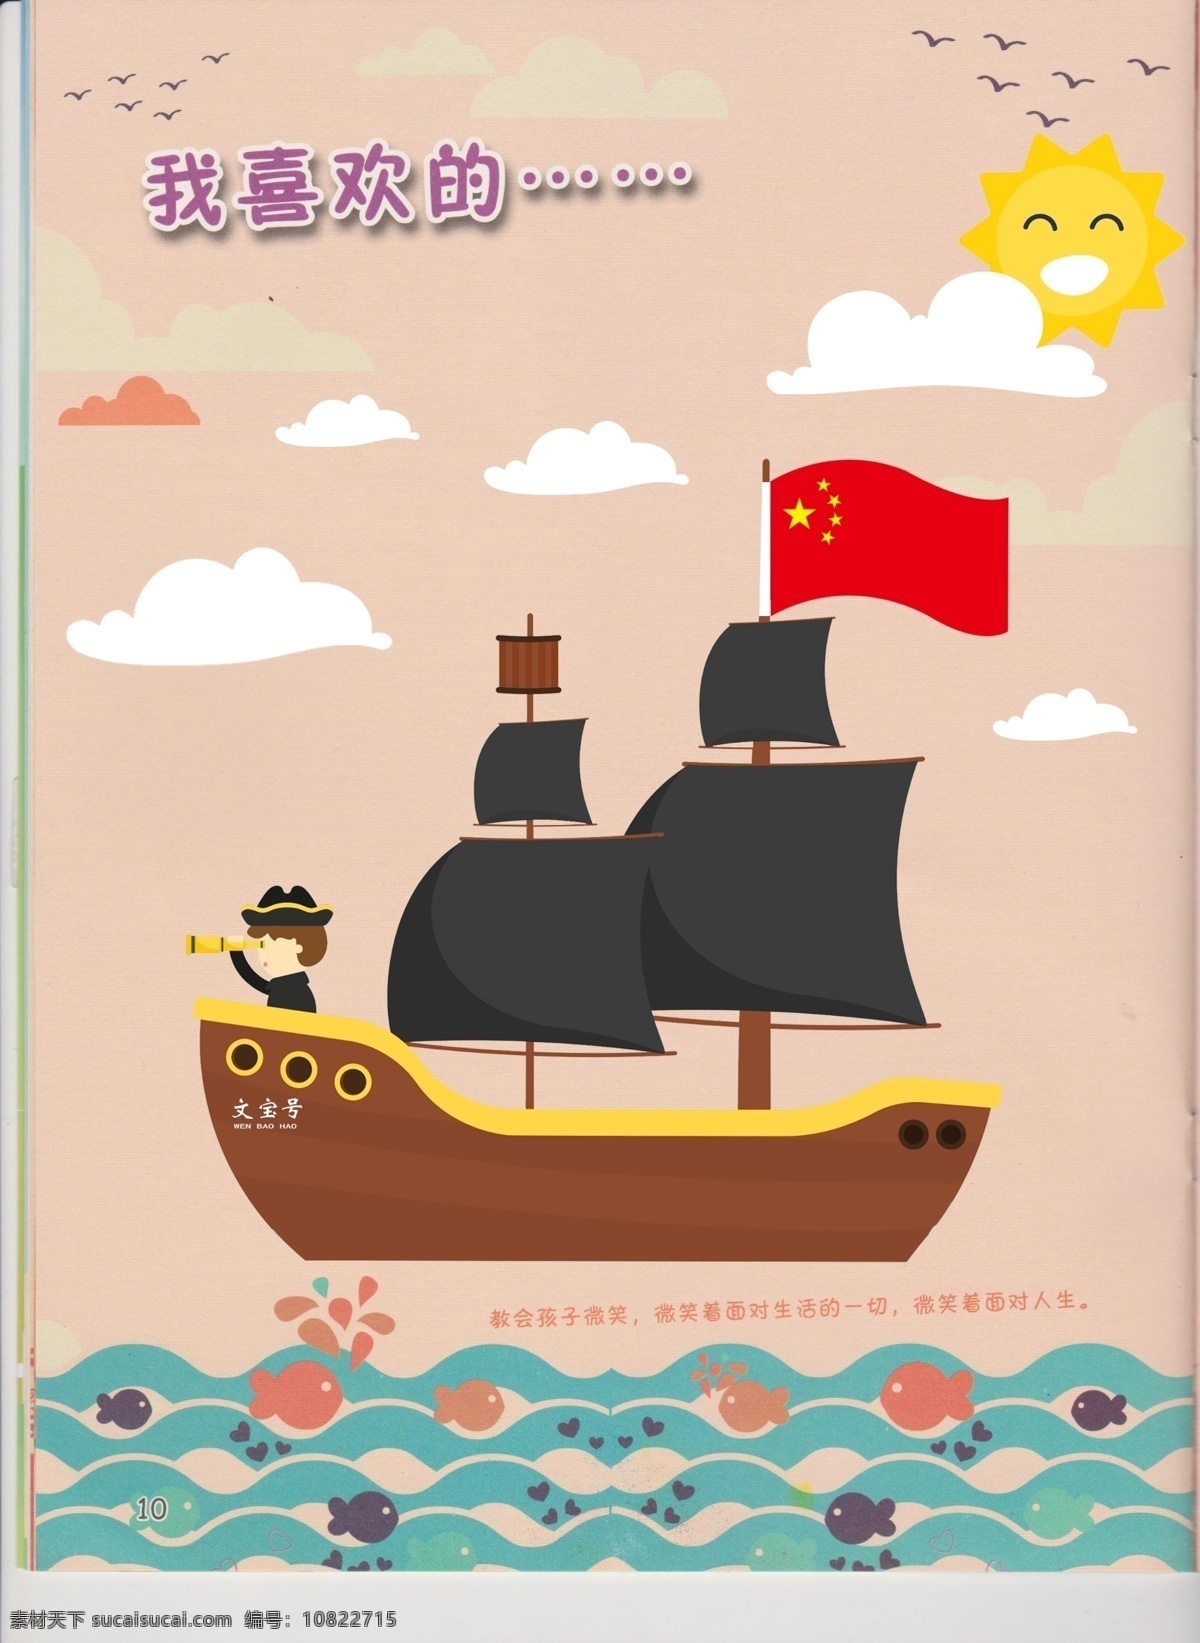 幼儿园 成长 档案 成长档案 画册 海盗船 相框 我最喜欢的 分层